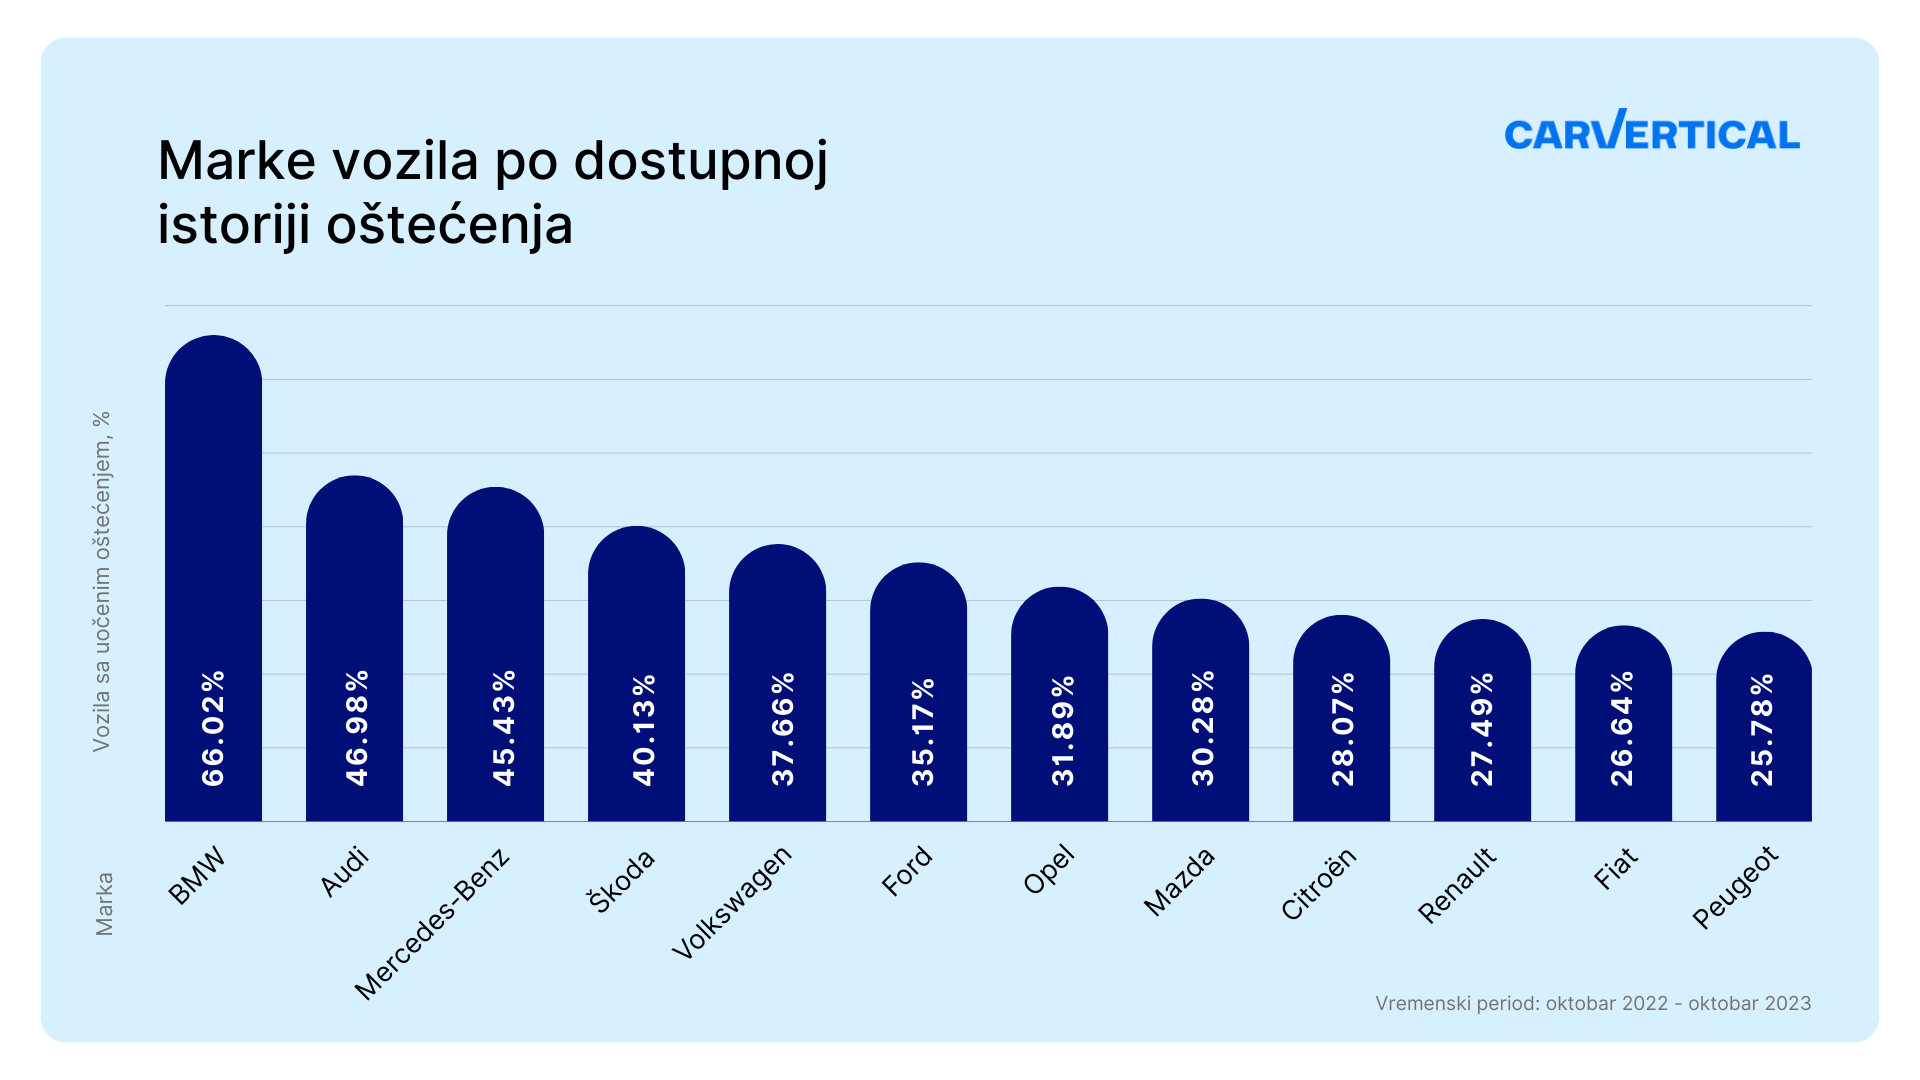 Istraživanje: Koje marke automobila su među najoštećenijima u Srbiji? 2